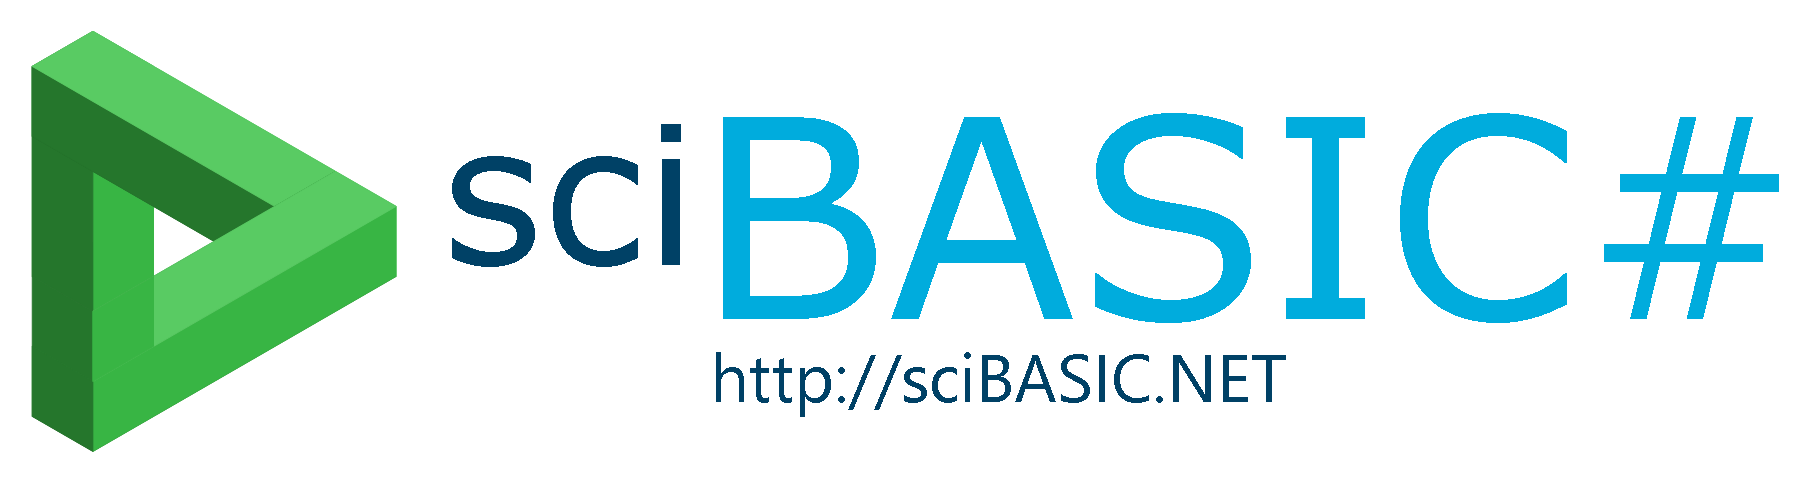 sciBASIC# logo